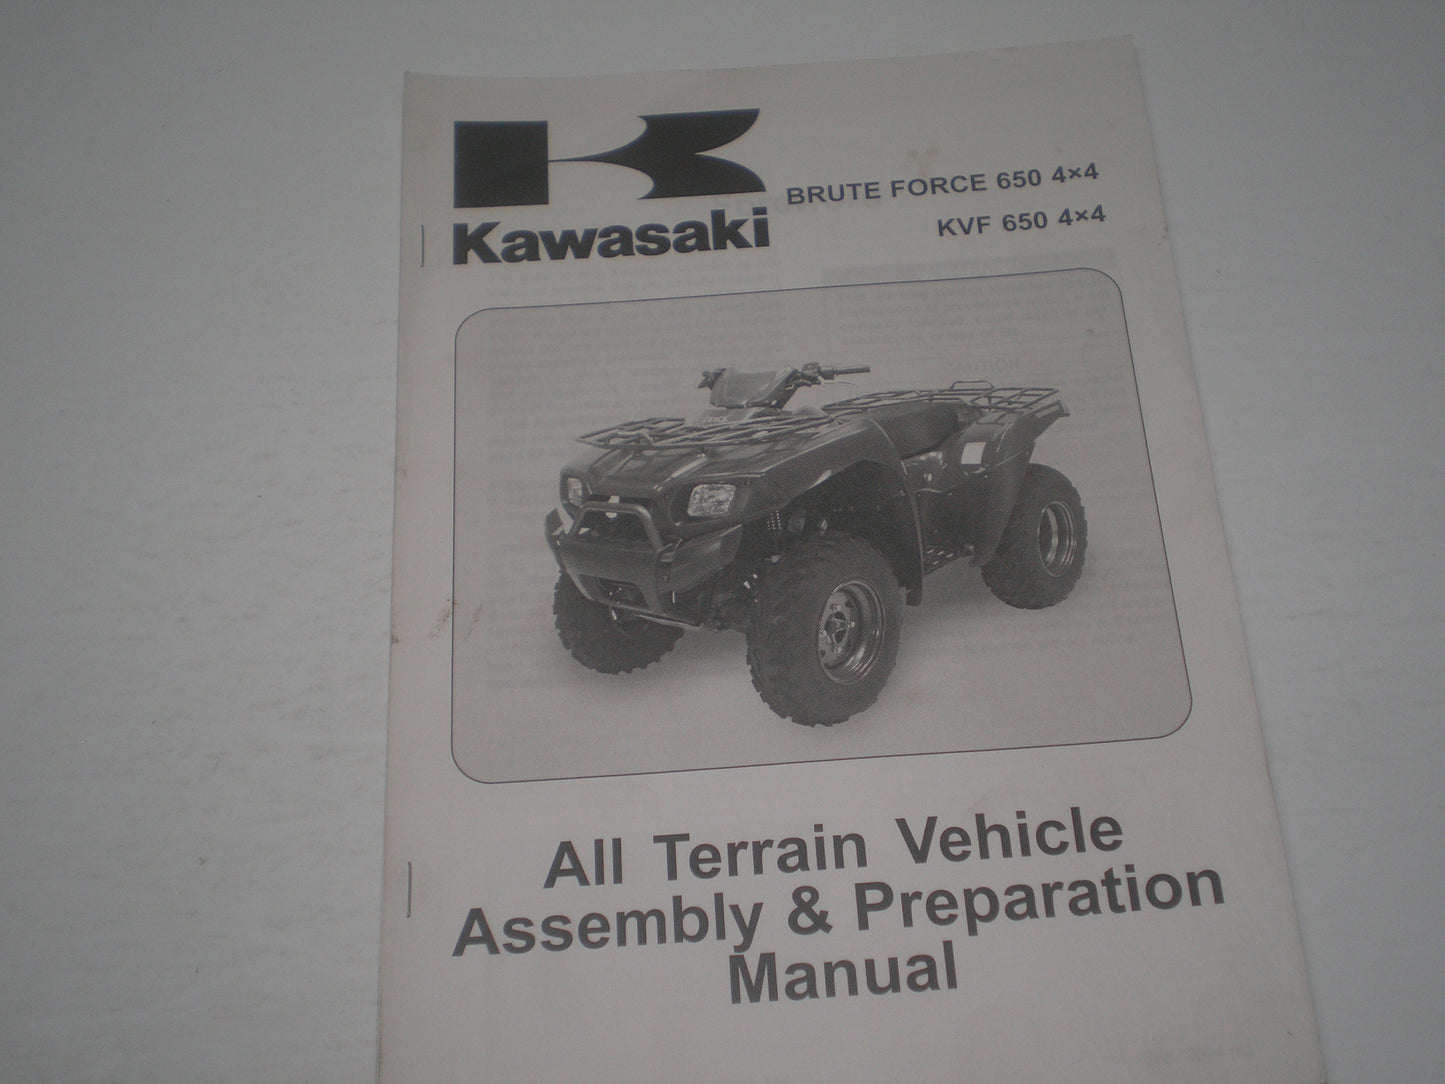 KAWASAKI Brute Force 650 4x4 / KVF650 4x4 / KVF650 D1/E1  2005  Assembly & Preparation Manual  99931-1450-01  #1866